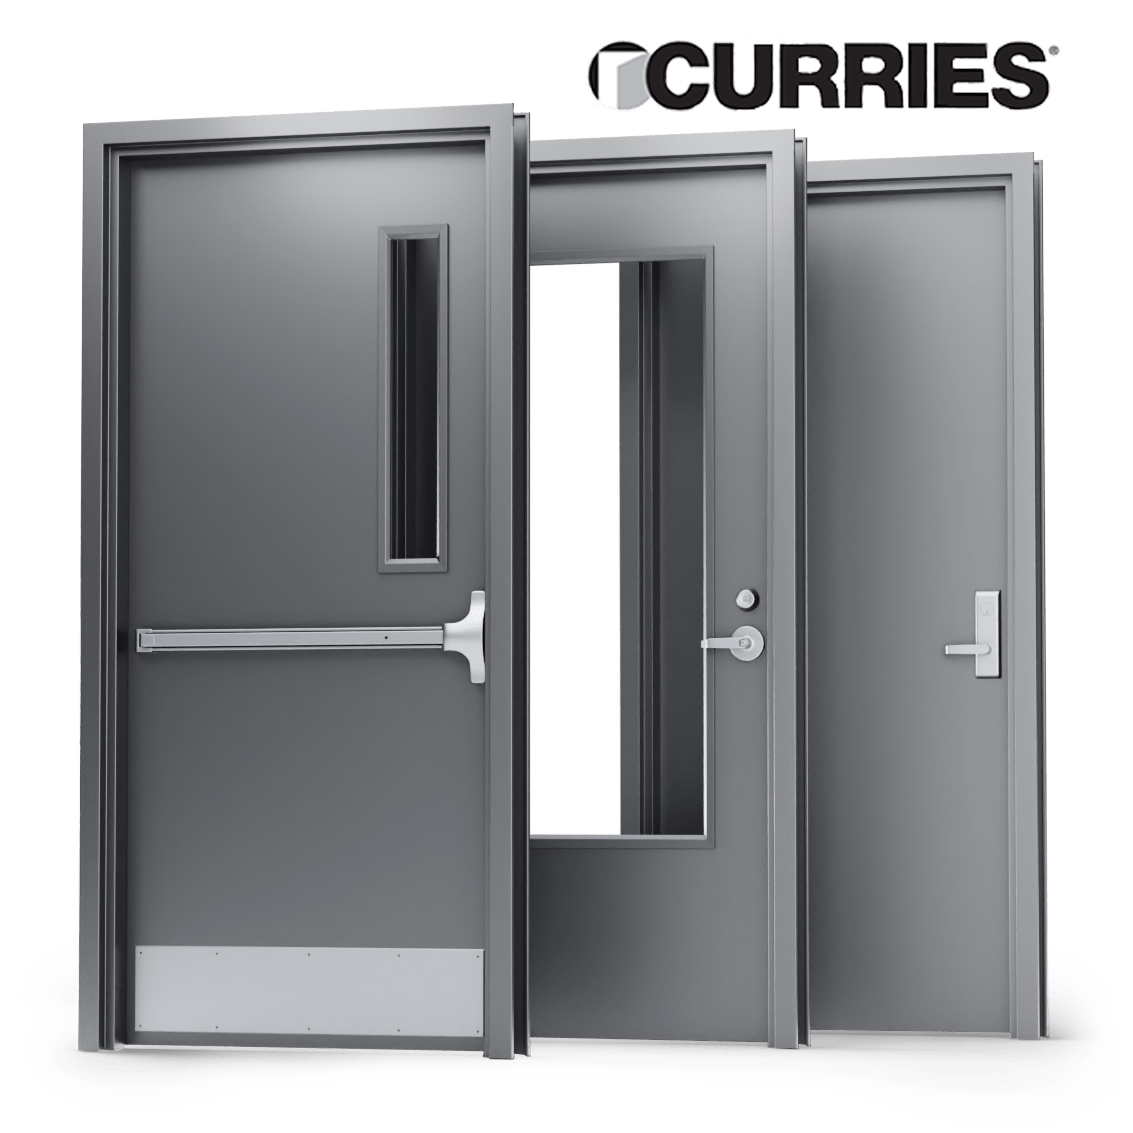 3 metal curries doors